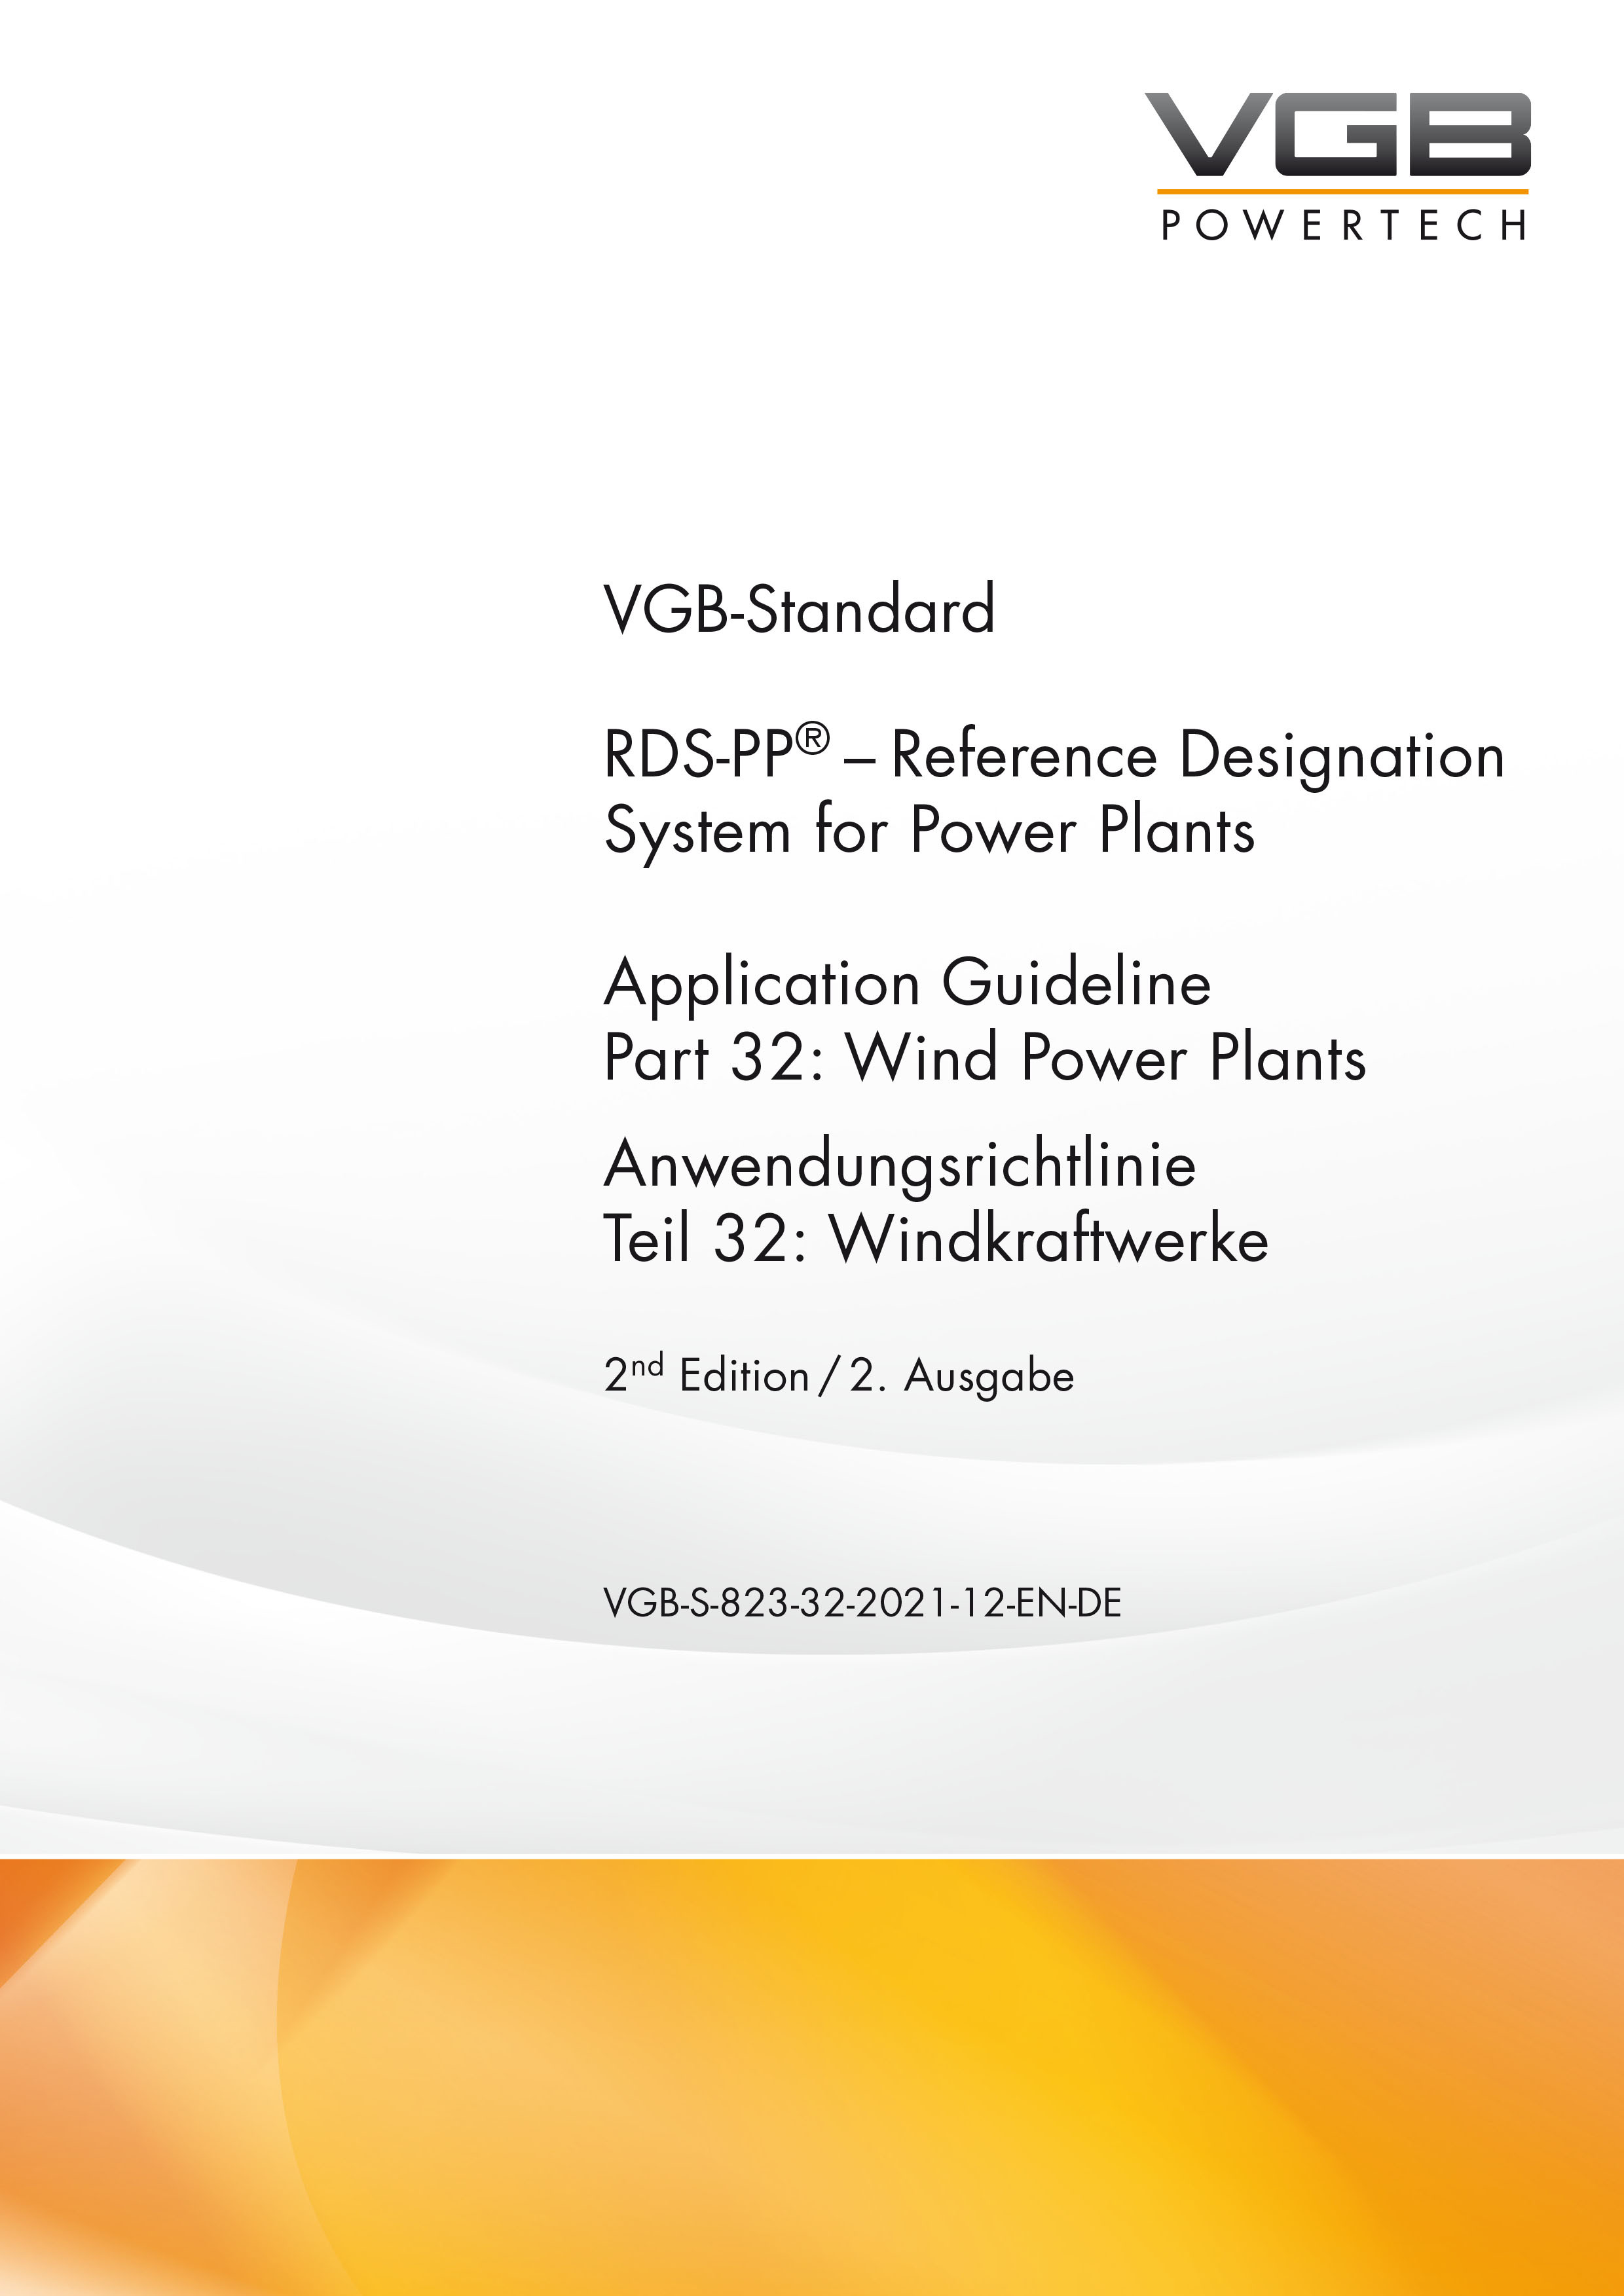 RDS-PP® – Application Guideline; Part 32: Wind Power Plants; Anwendungsrichtlinie, Teil 32: Windkraftwerke, 2nd Edition / 2. Ausgabe - Print